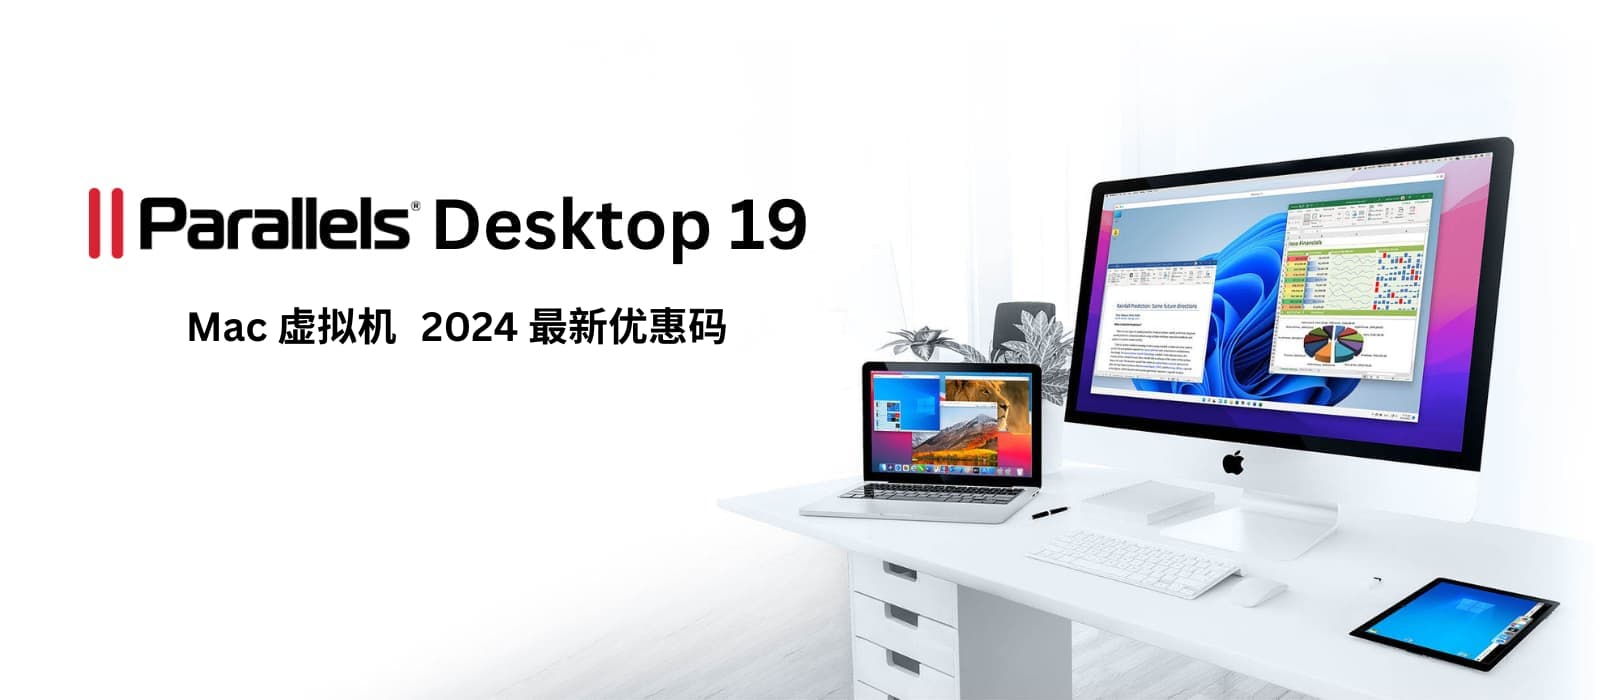 Parallels Desktop 19 - macOS 虚拟机工具，2024春季 8 折限时优惠[截止2024年5月1日] 10